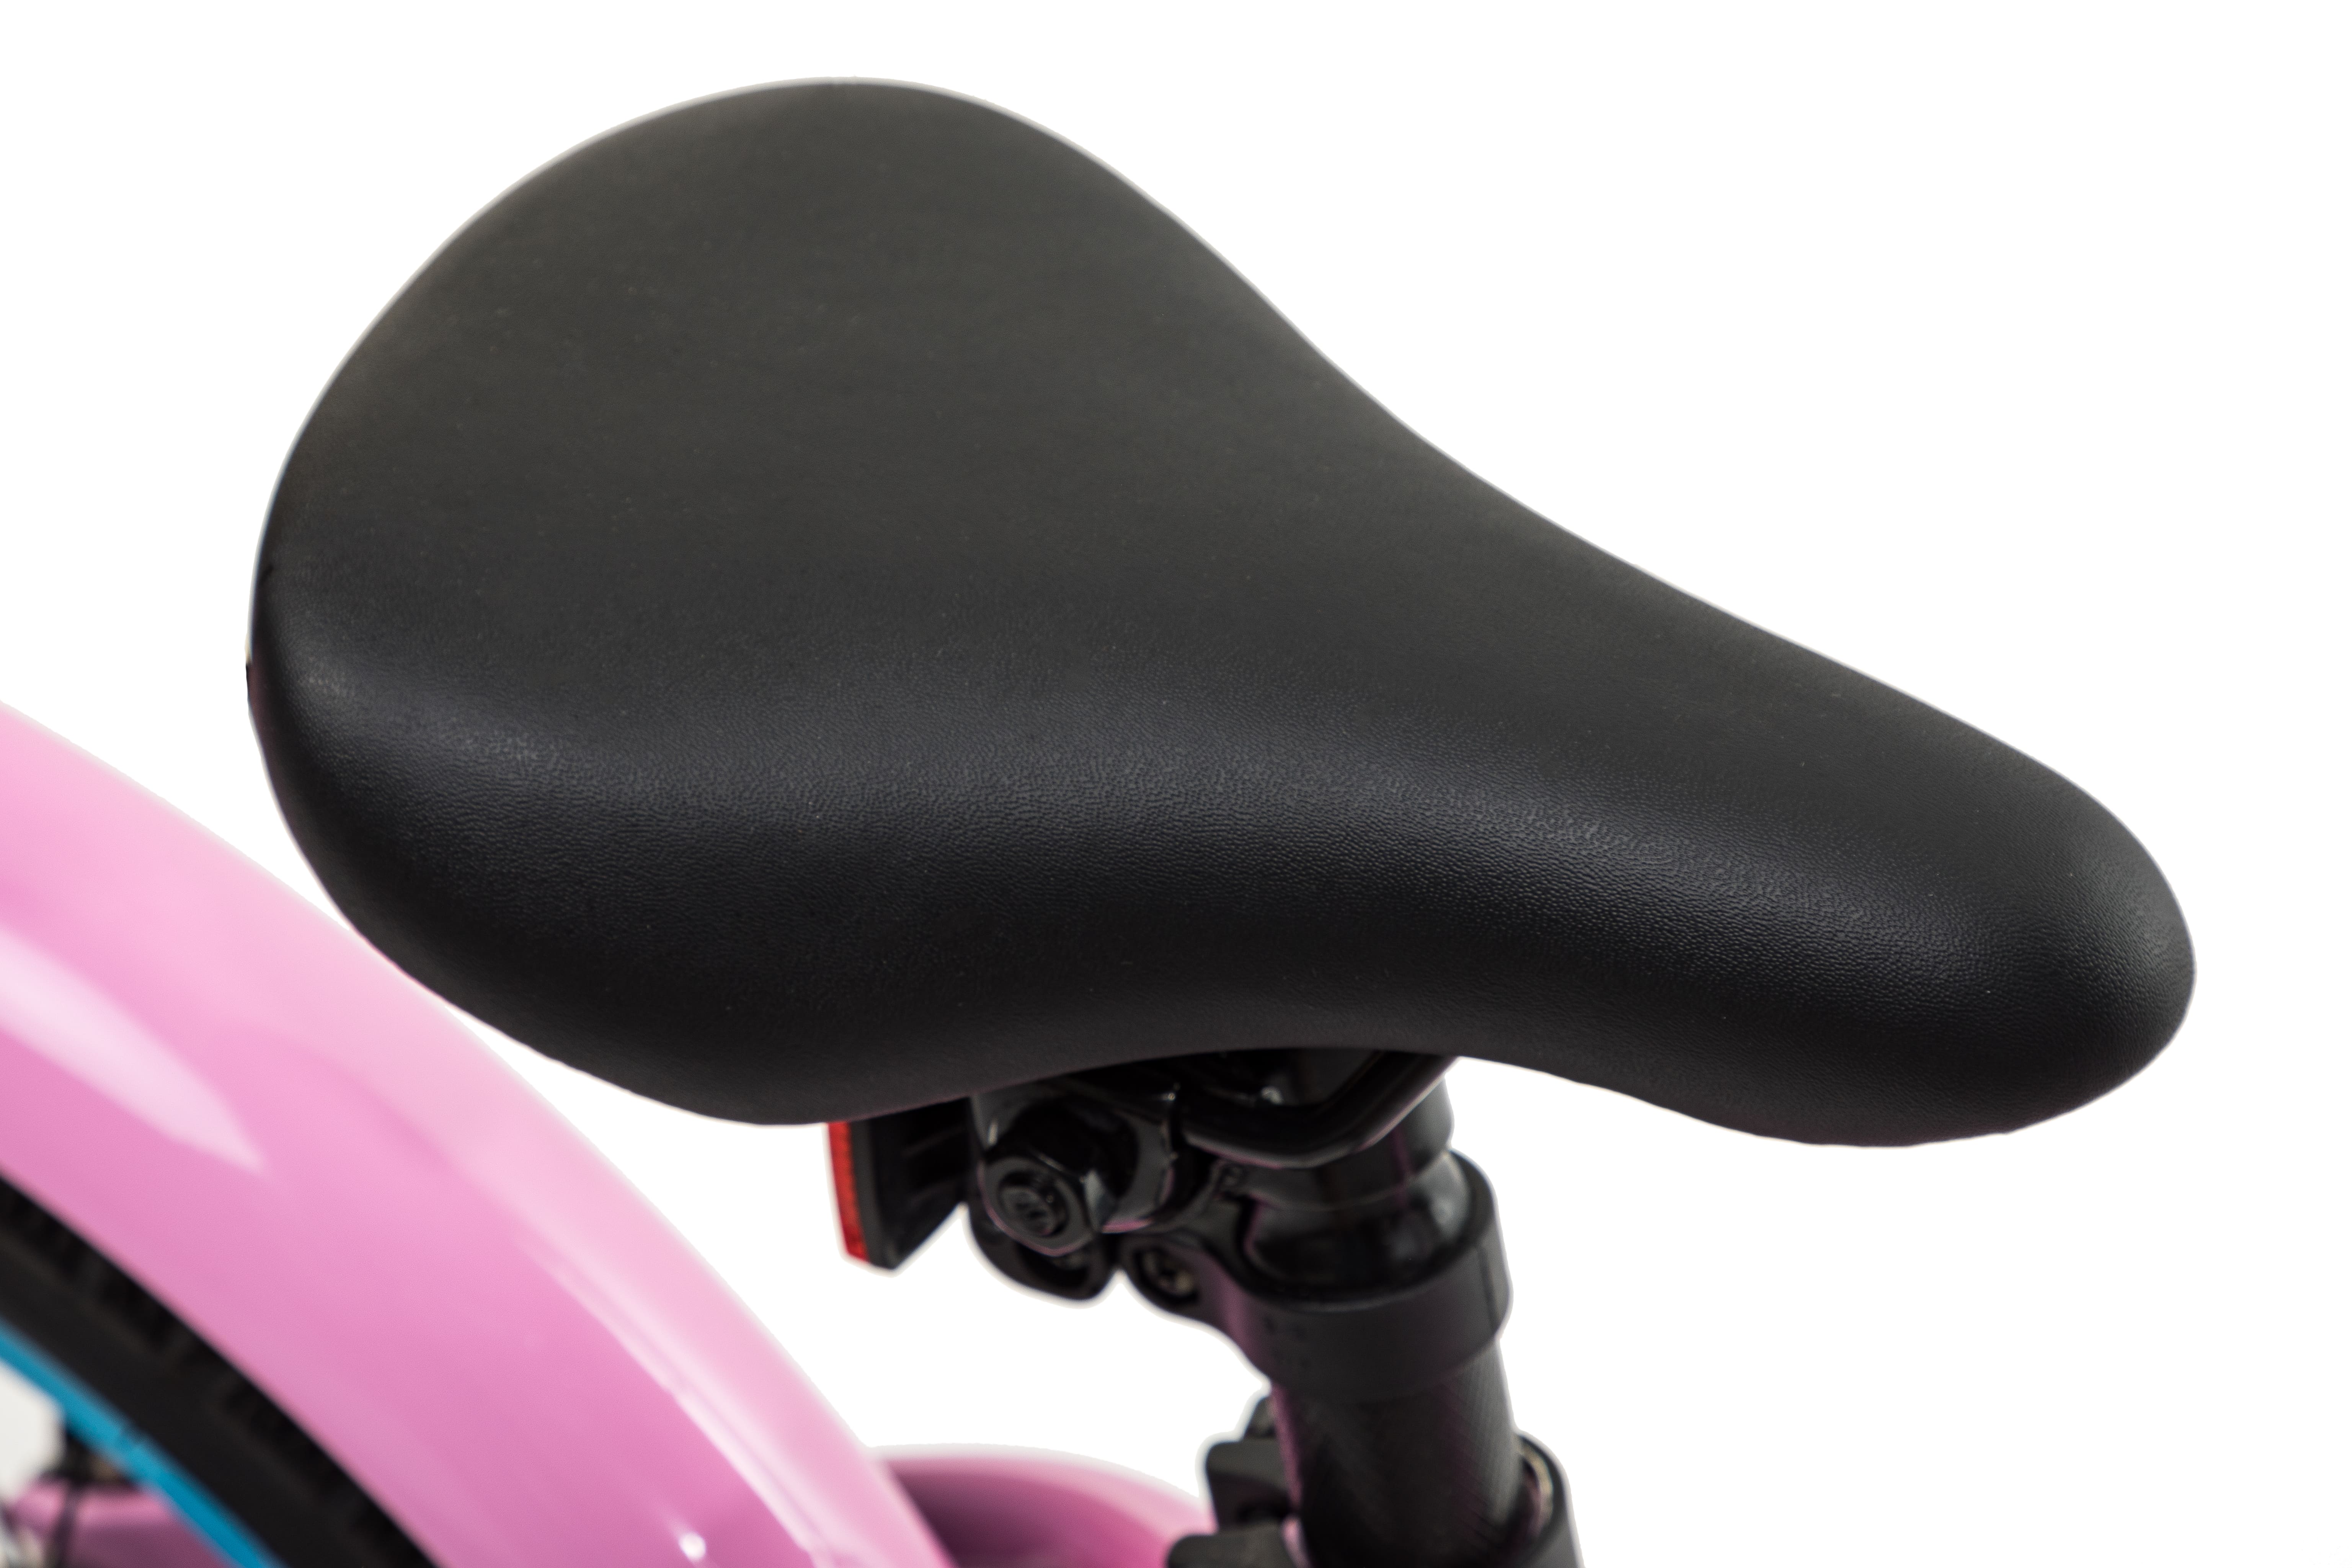 Велосипед Aspect MELISSA 16" Фиолетовый (2022)